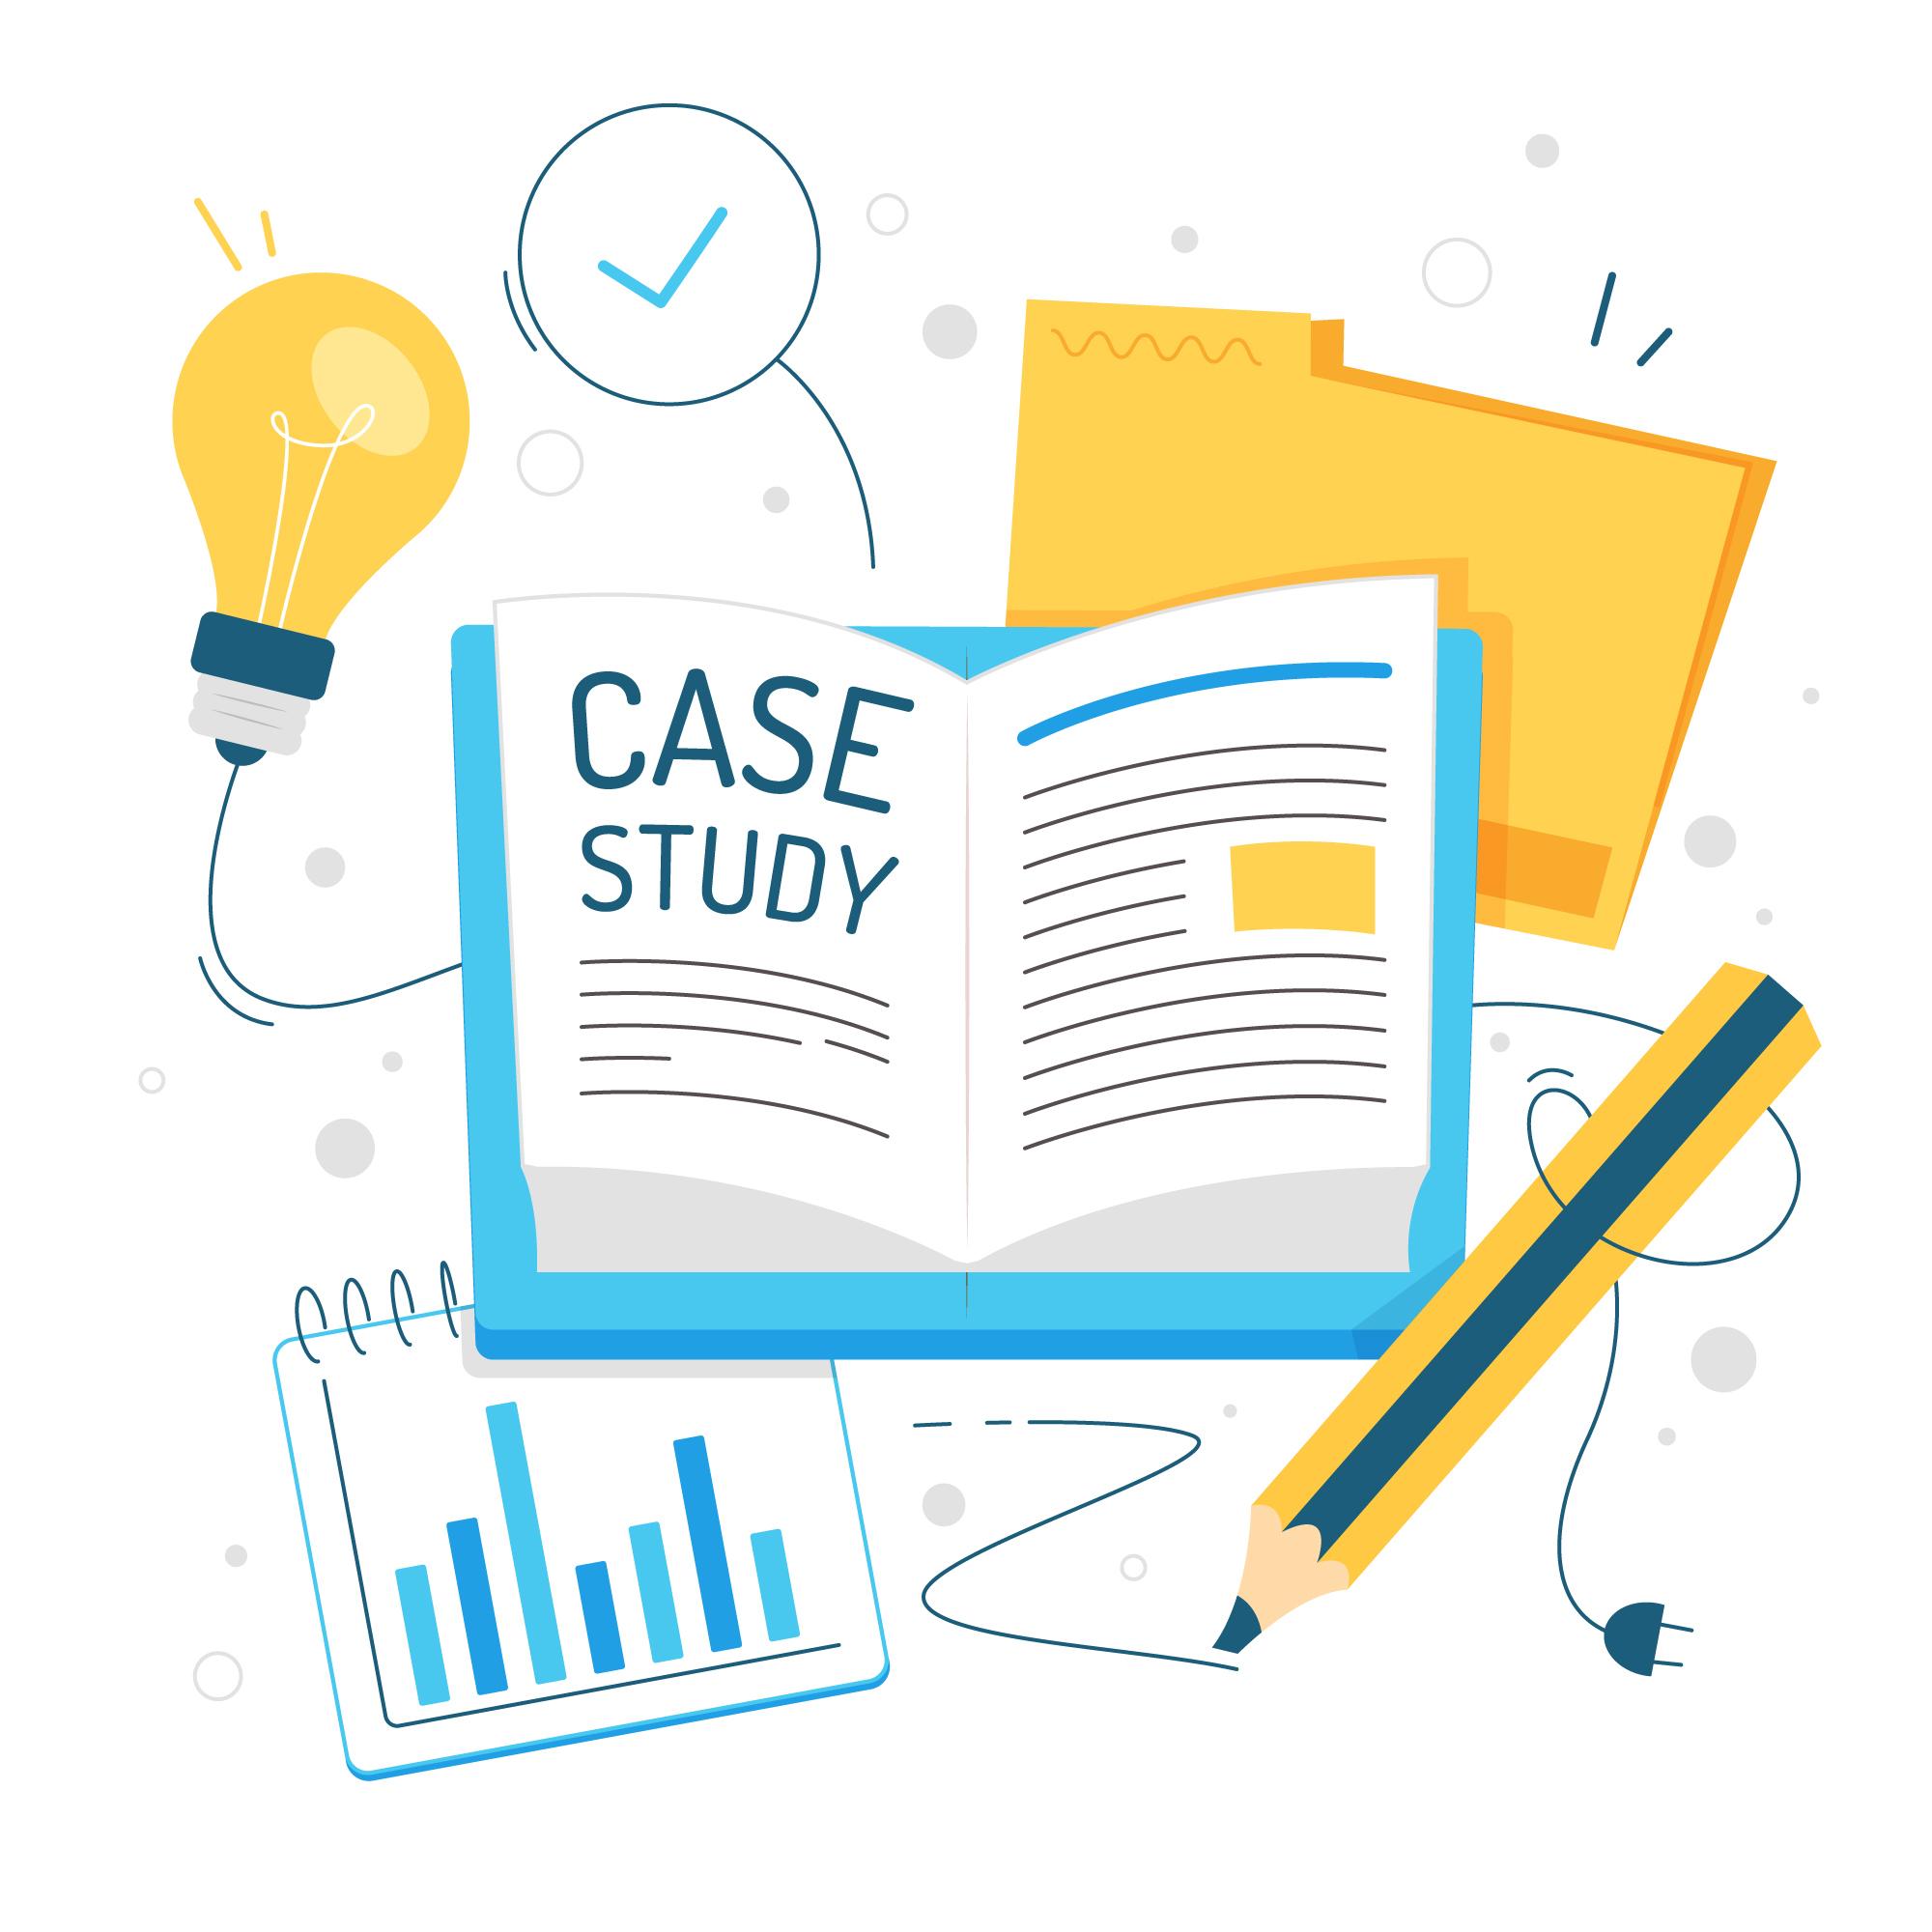 Case study – 1 (Dispute between Joint Venture Partners)